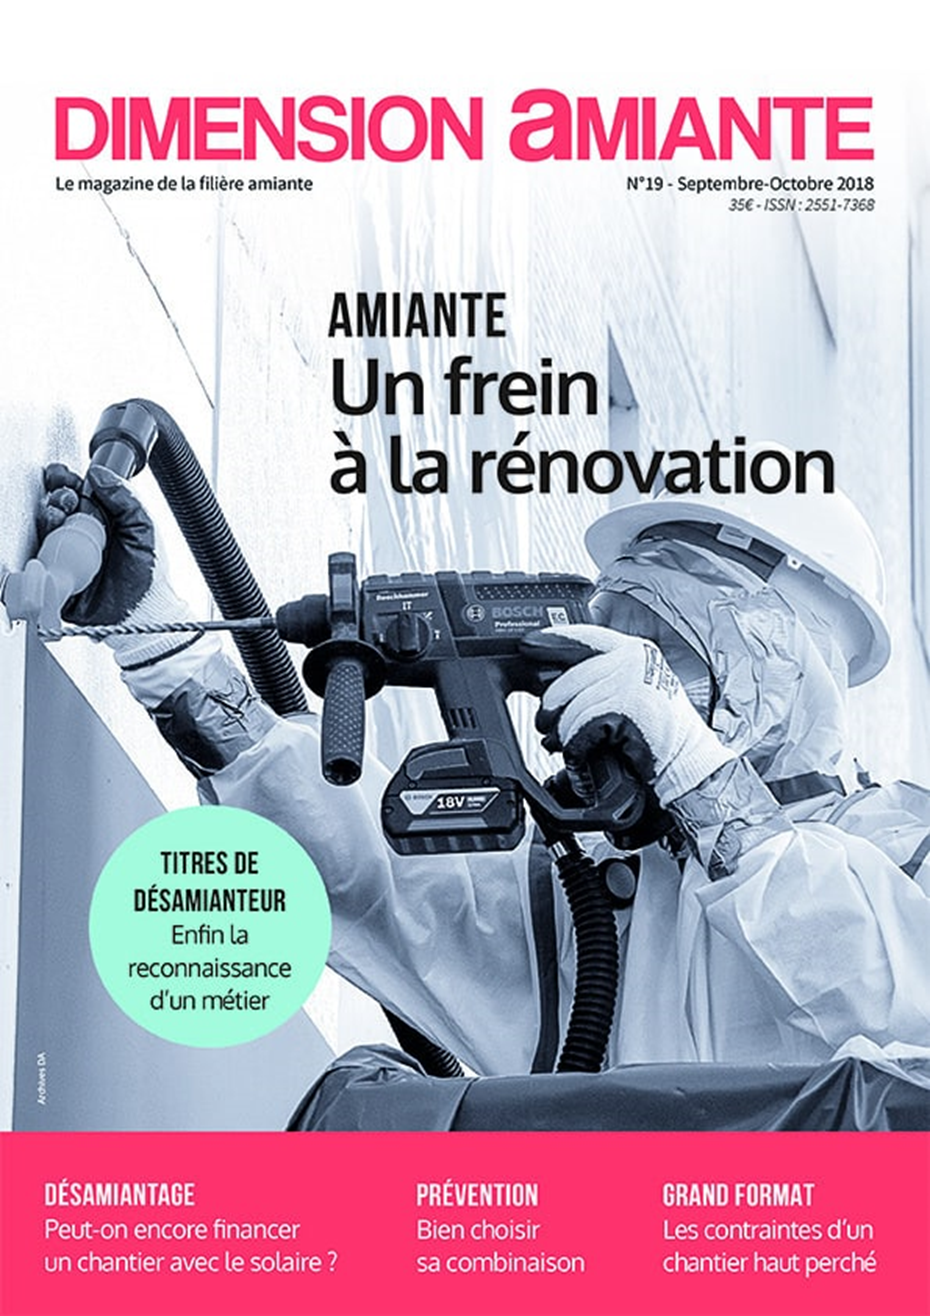 Le magazine Dimension Amiante parle des innovations avec les produits AMIANTOL et DETOX